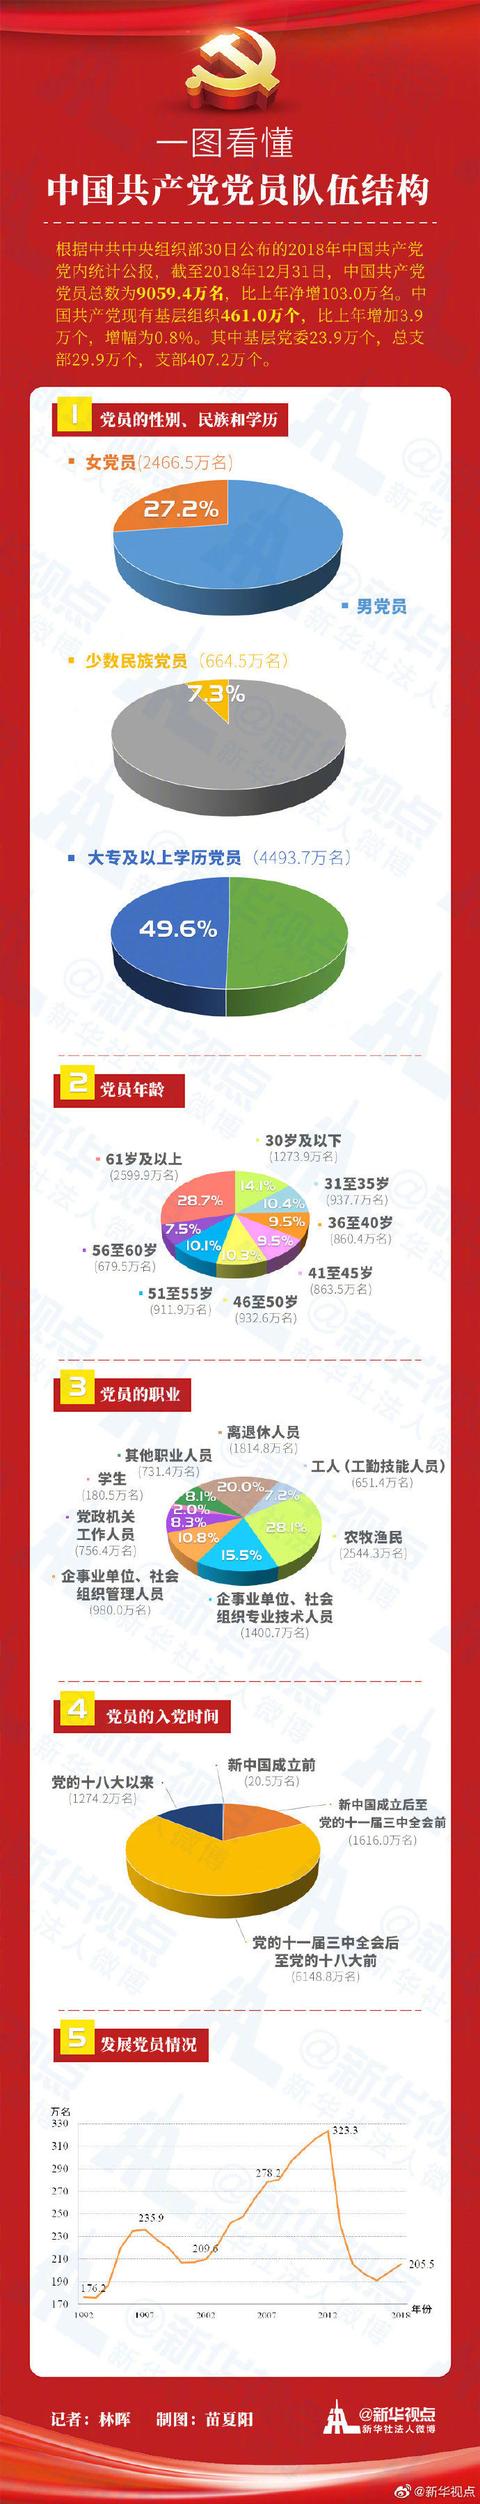 党员有多少人,2020年中国党员数据最全分析